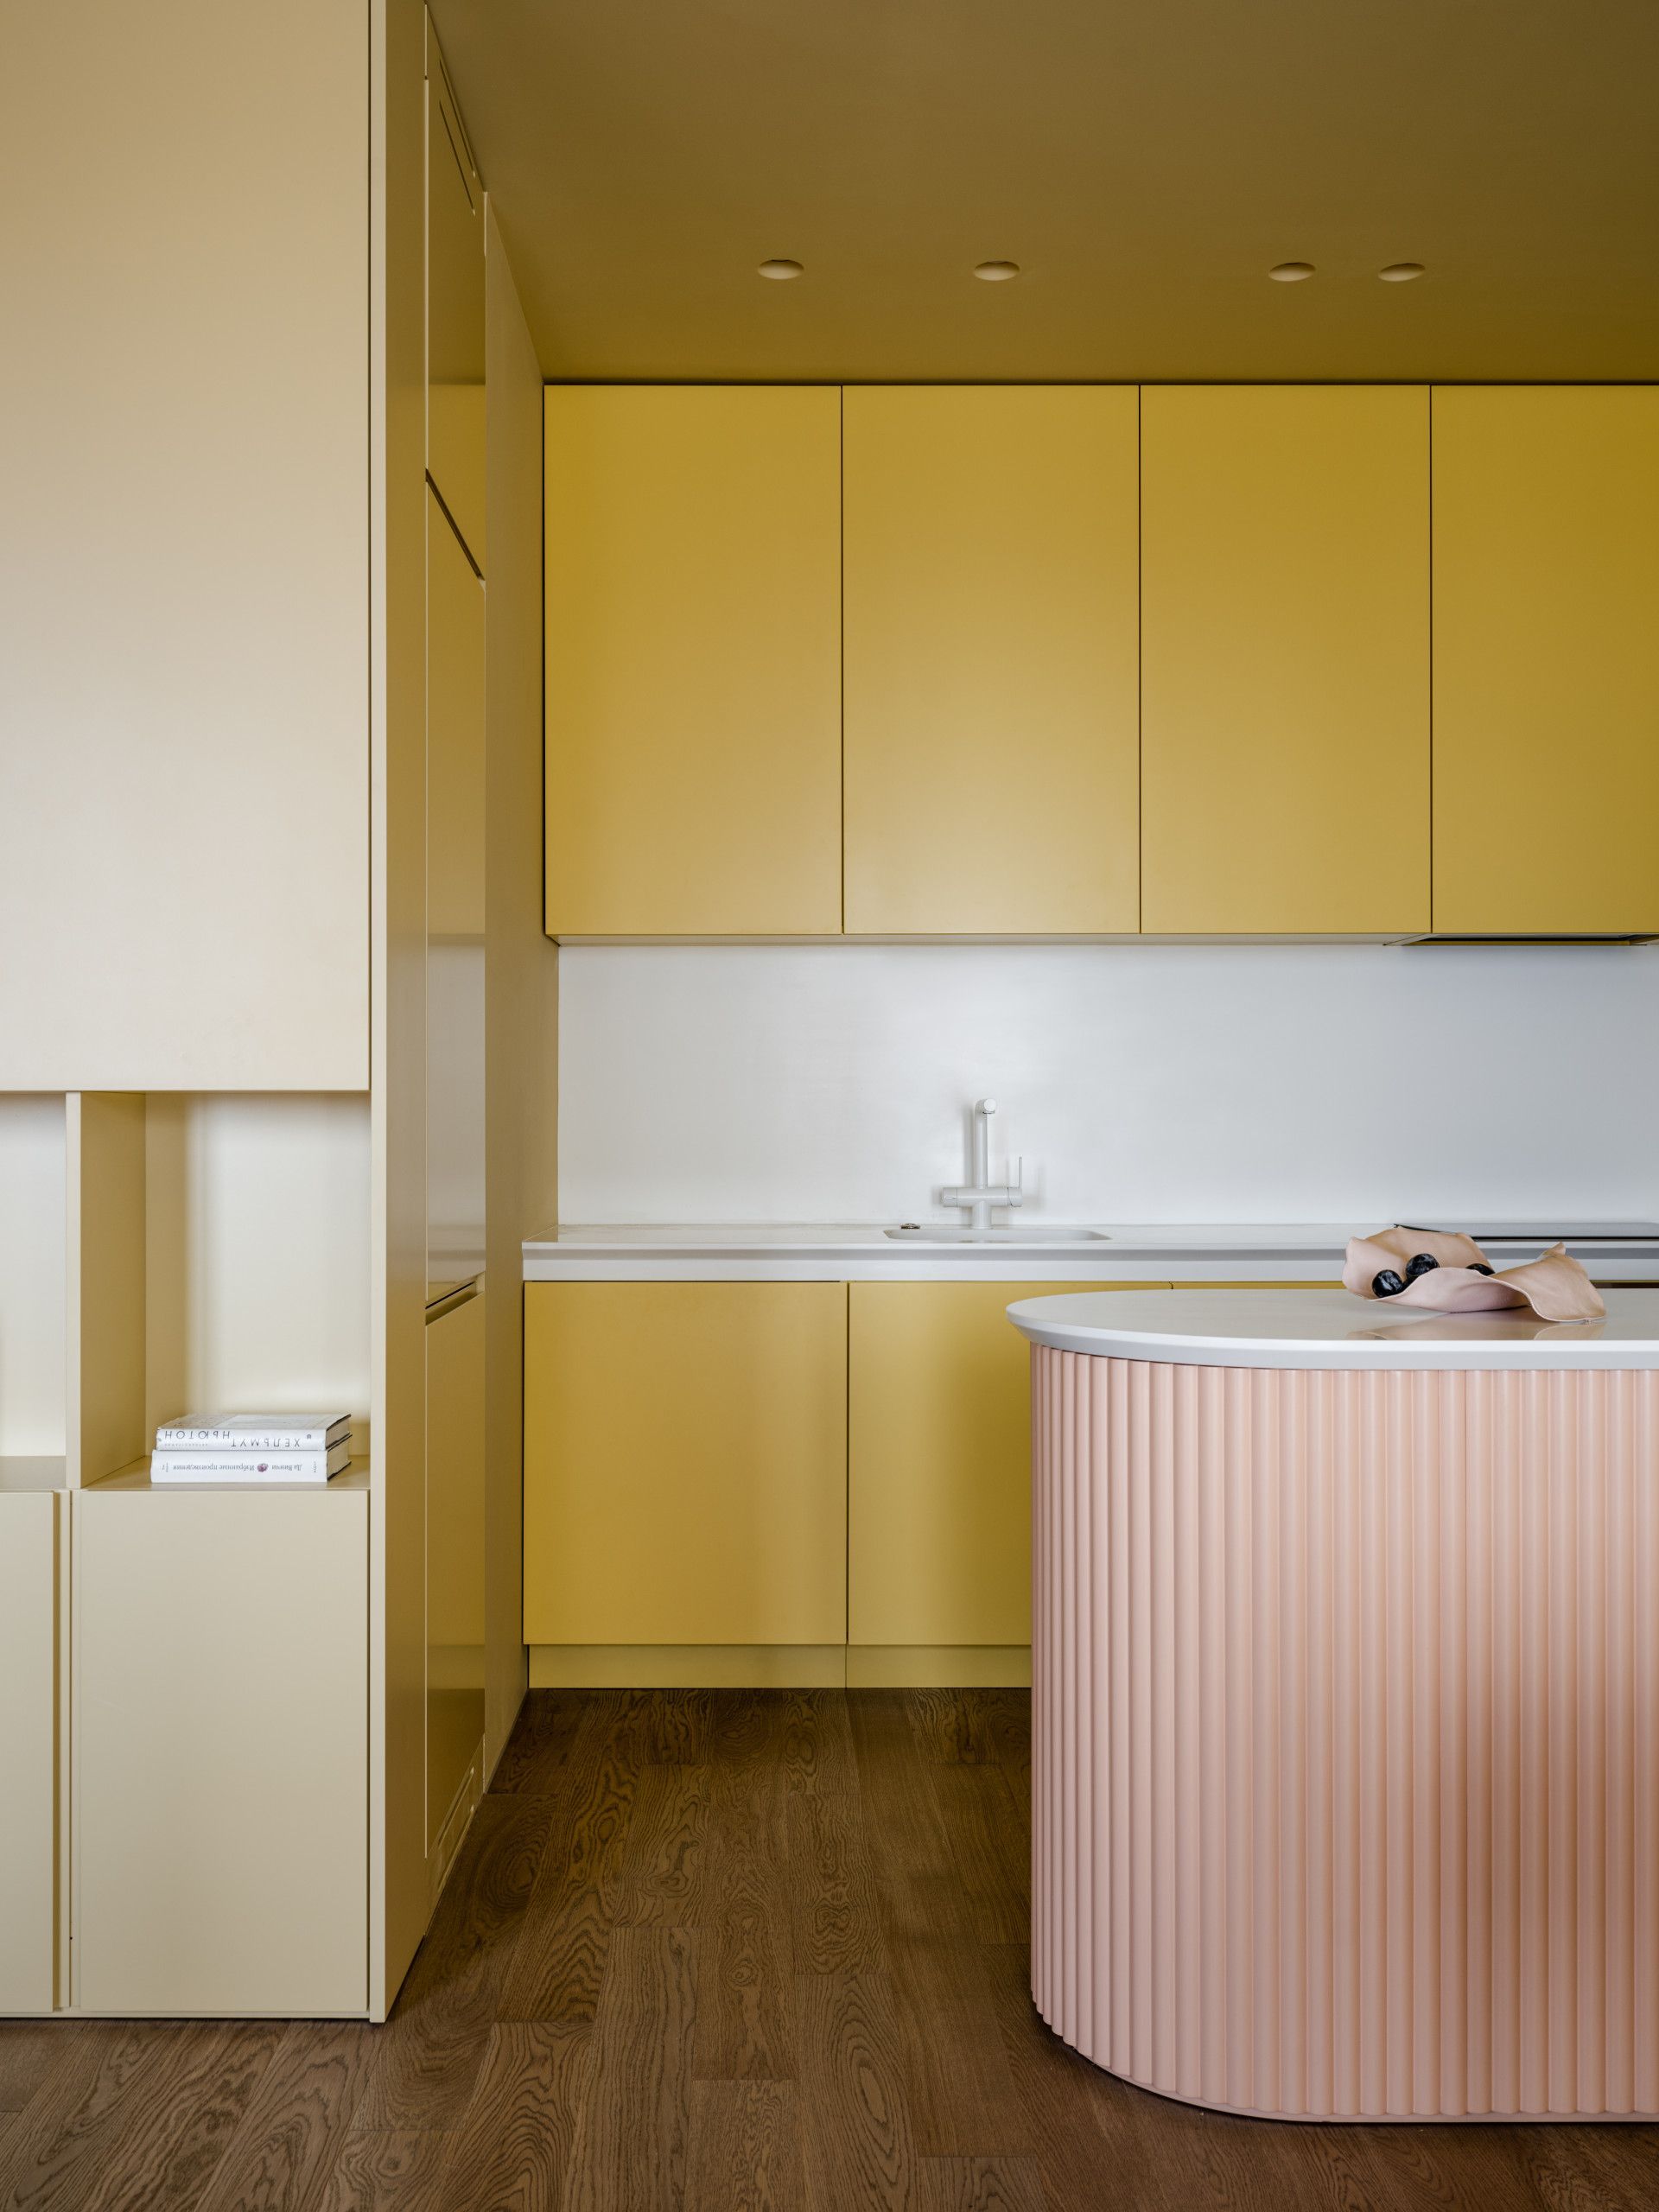 White And Yellow Kitchen Design Elegant Kitchen Design in White and Yellow Tones